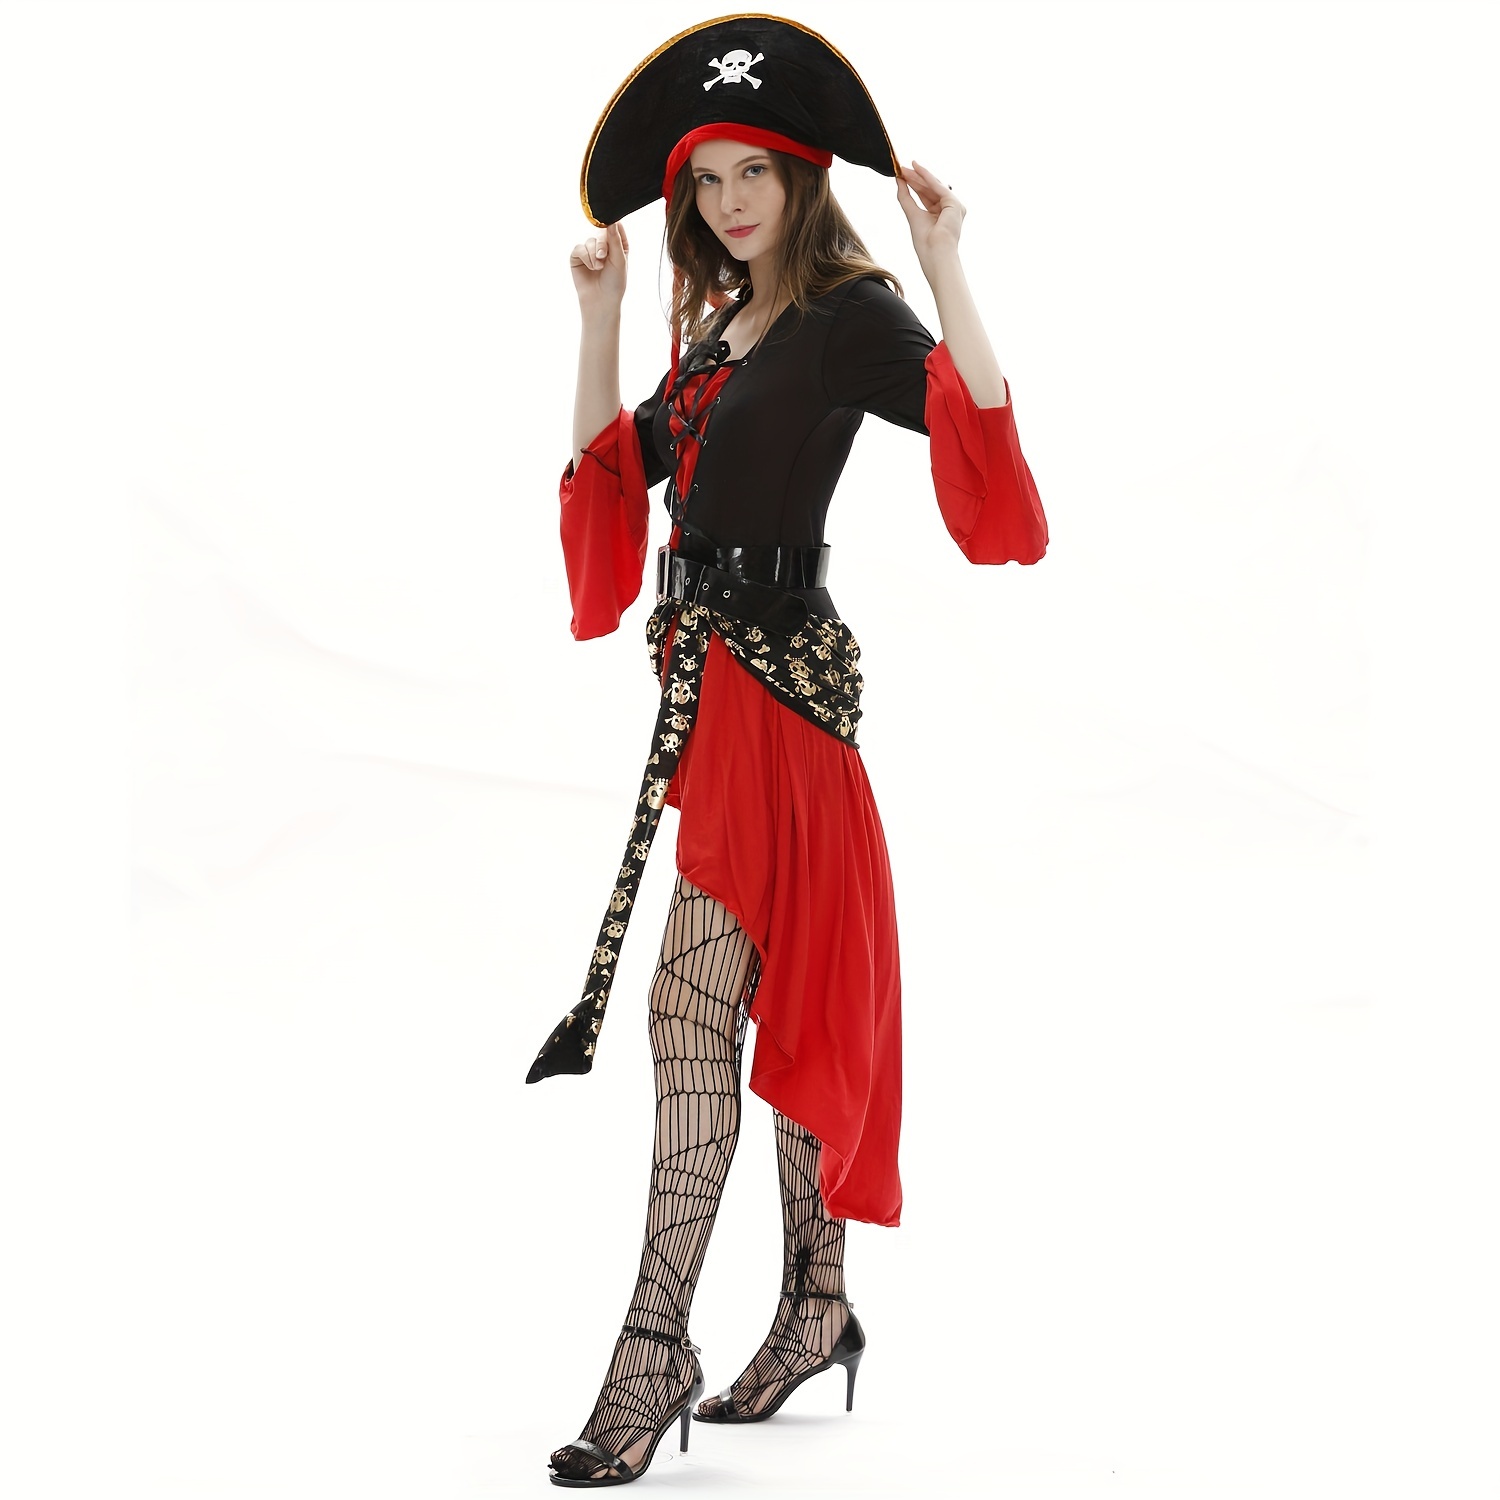 TOYANDONA Tapas - 2 piezas de sombrero de pirata con estampado de calavera,  gorra de capitán pirata, accesorio para fiesta de máscaras, cosplay